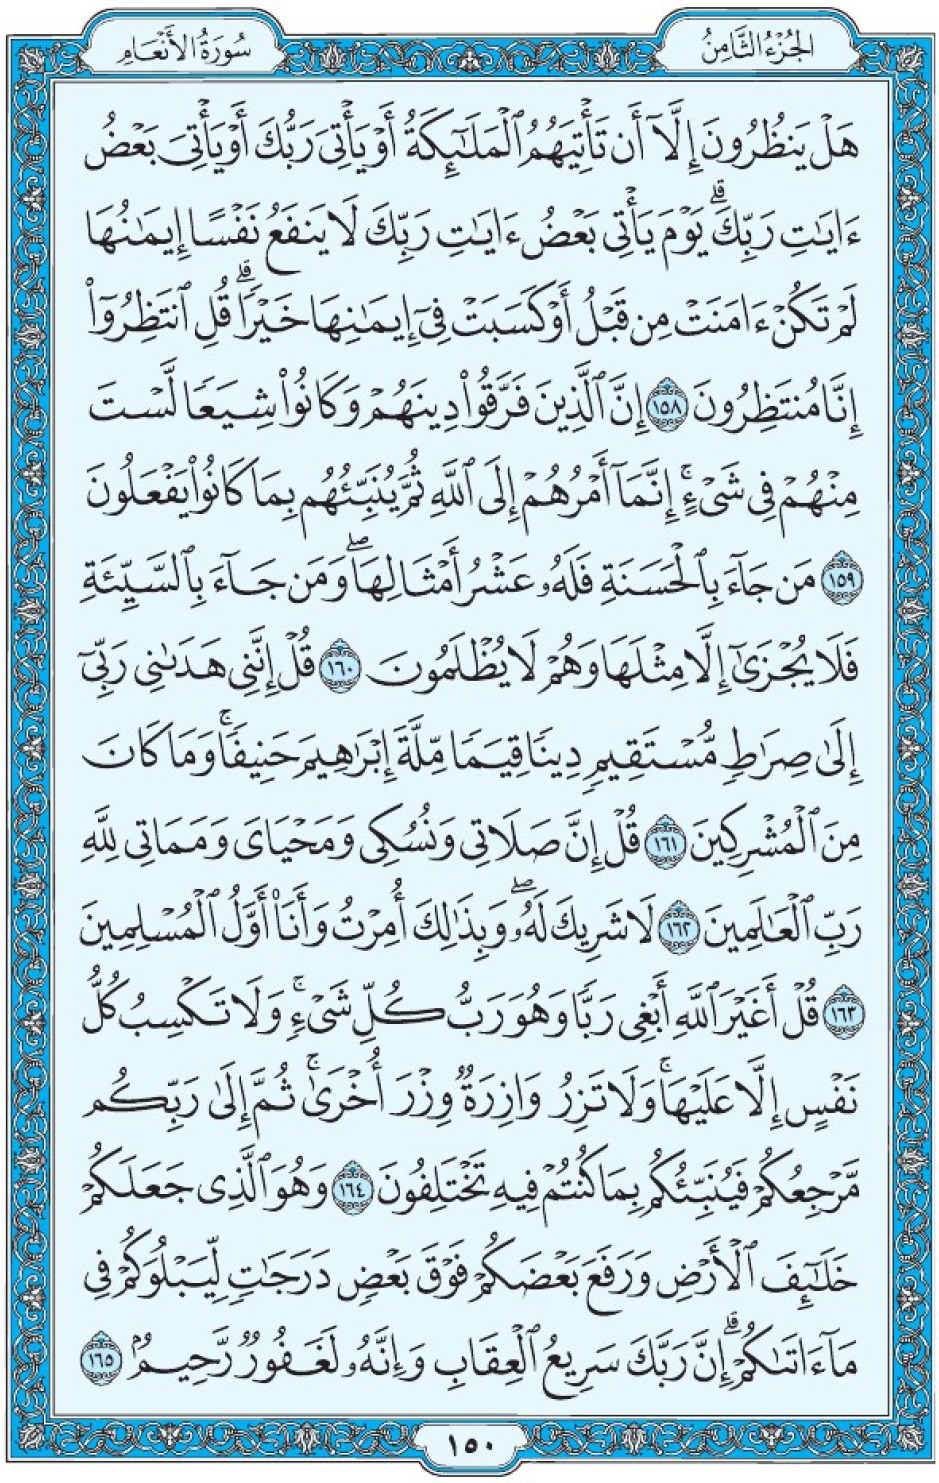 Коран Мединский мусхаф страница 150, Аль-Ан‘ам, аят 158-165